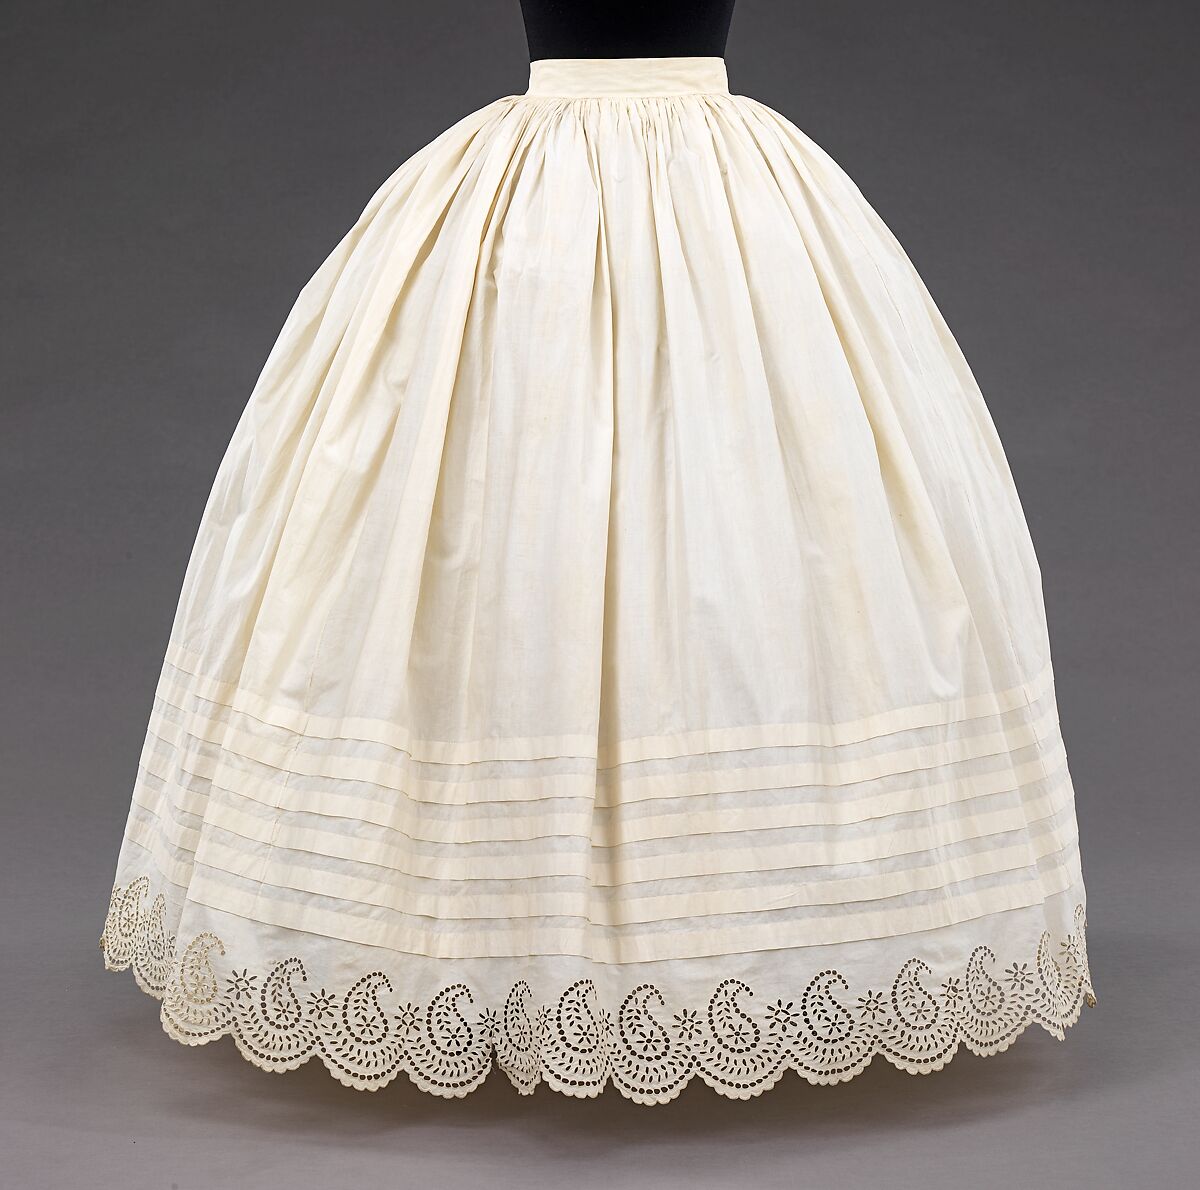 Petticoat, cotton, American 